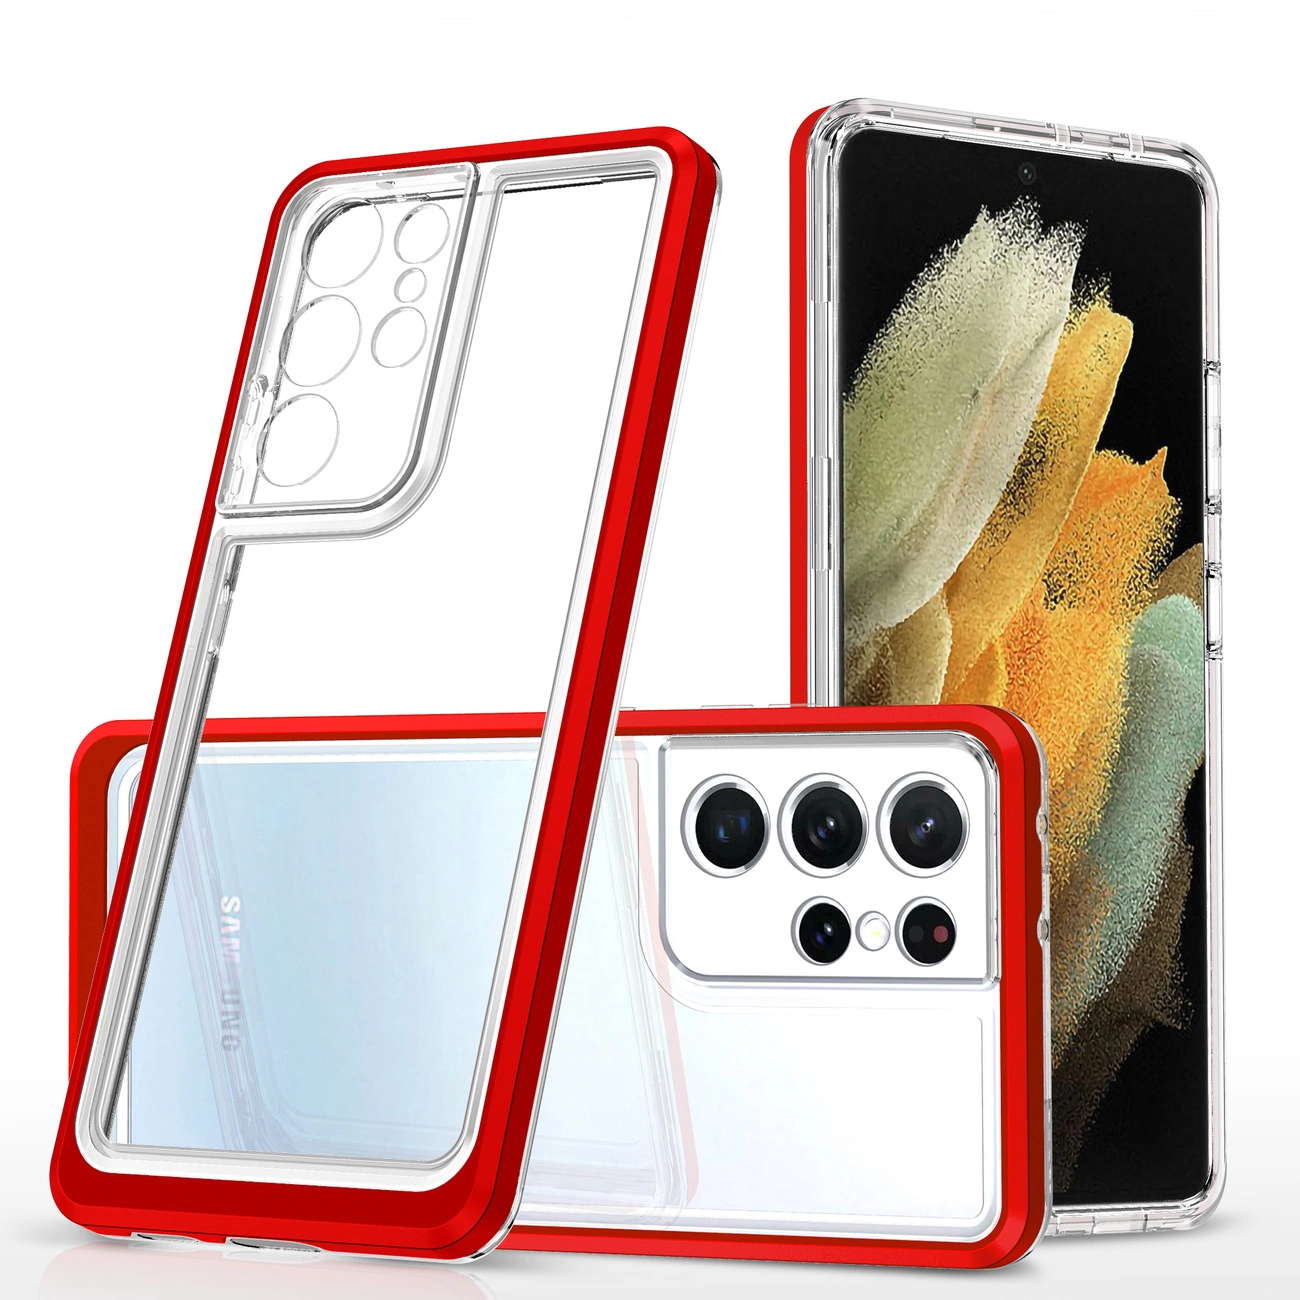 Hurtel Průhledné pouzdro 3v1 pro Samsung Galaxy S21 Ultra 5G gelový kryt s rámečkem červený